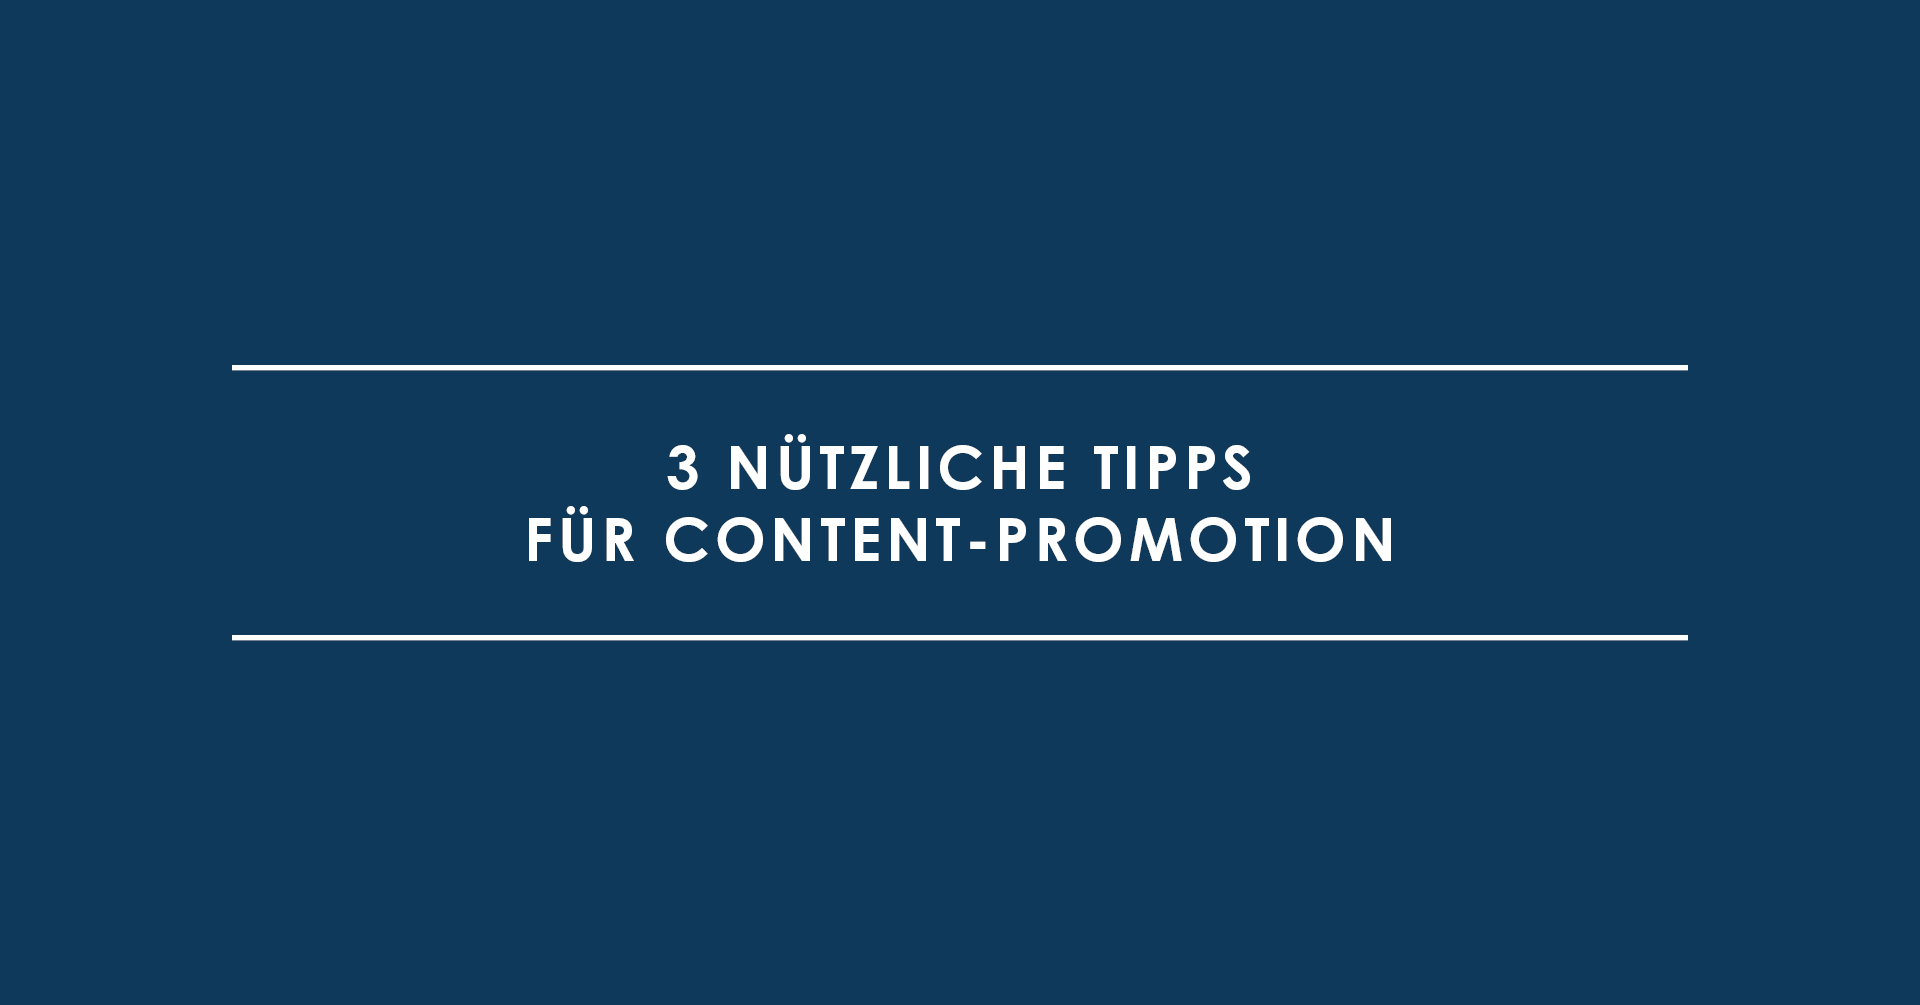 3 nützliche Tipps für Content-Promotion